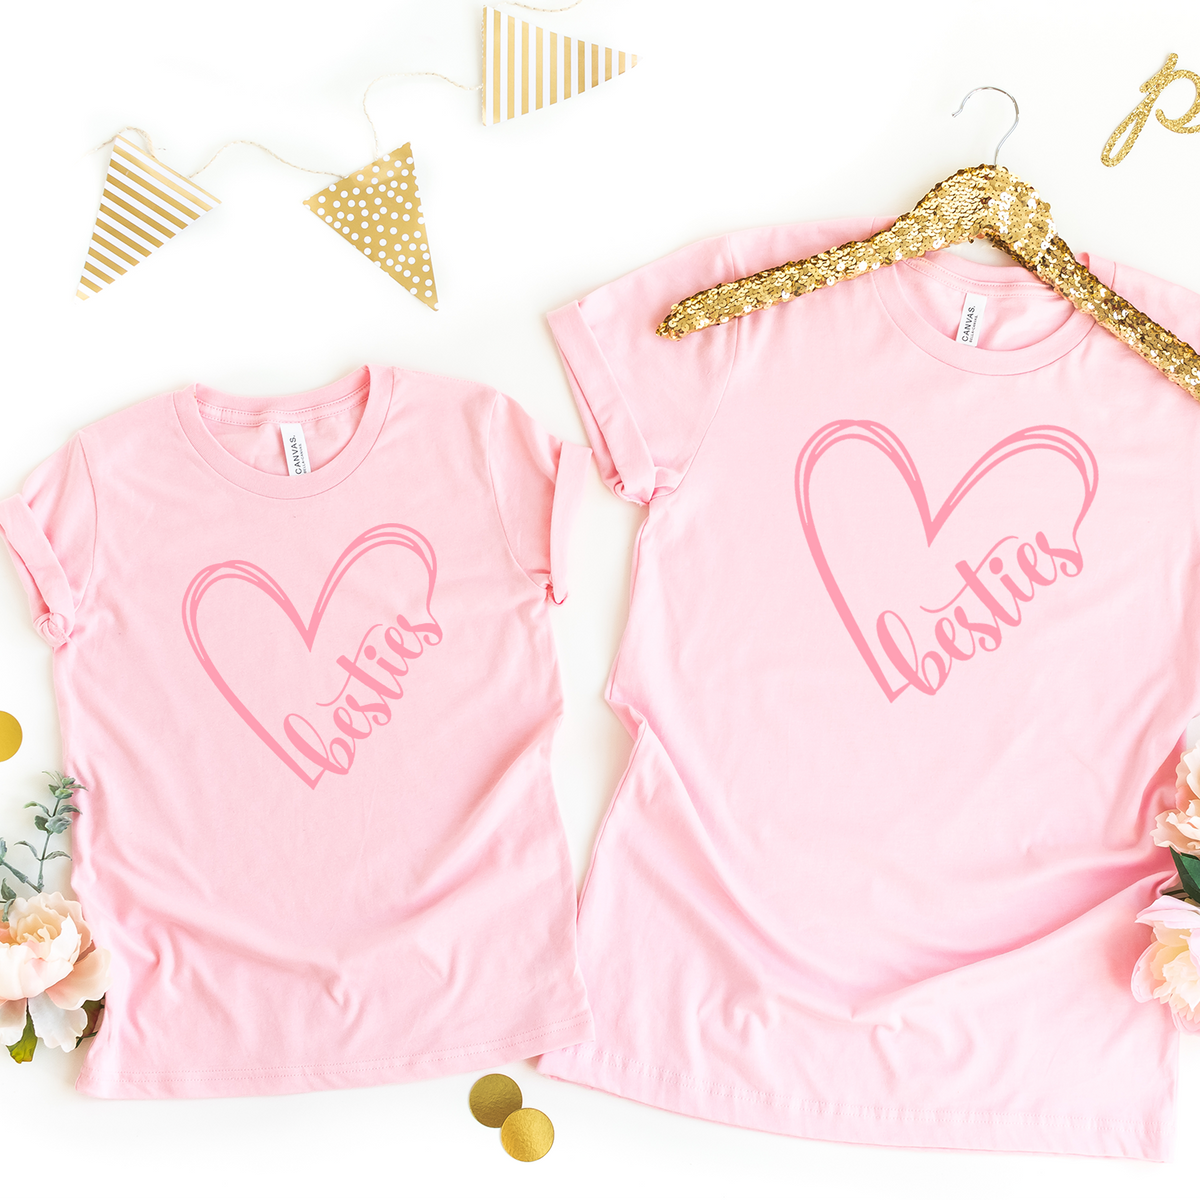 Besties Heart Pink Twinning T-Shirts - mummy &amp; me